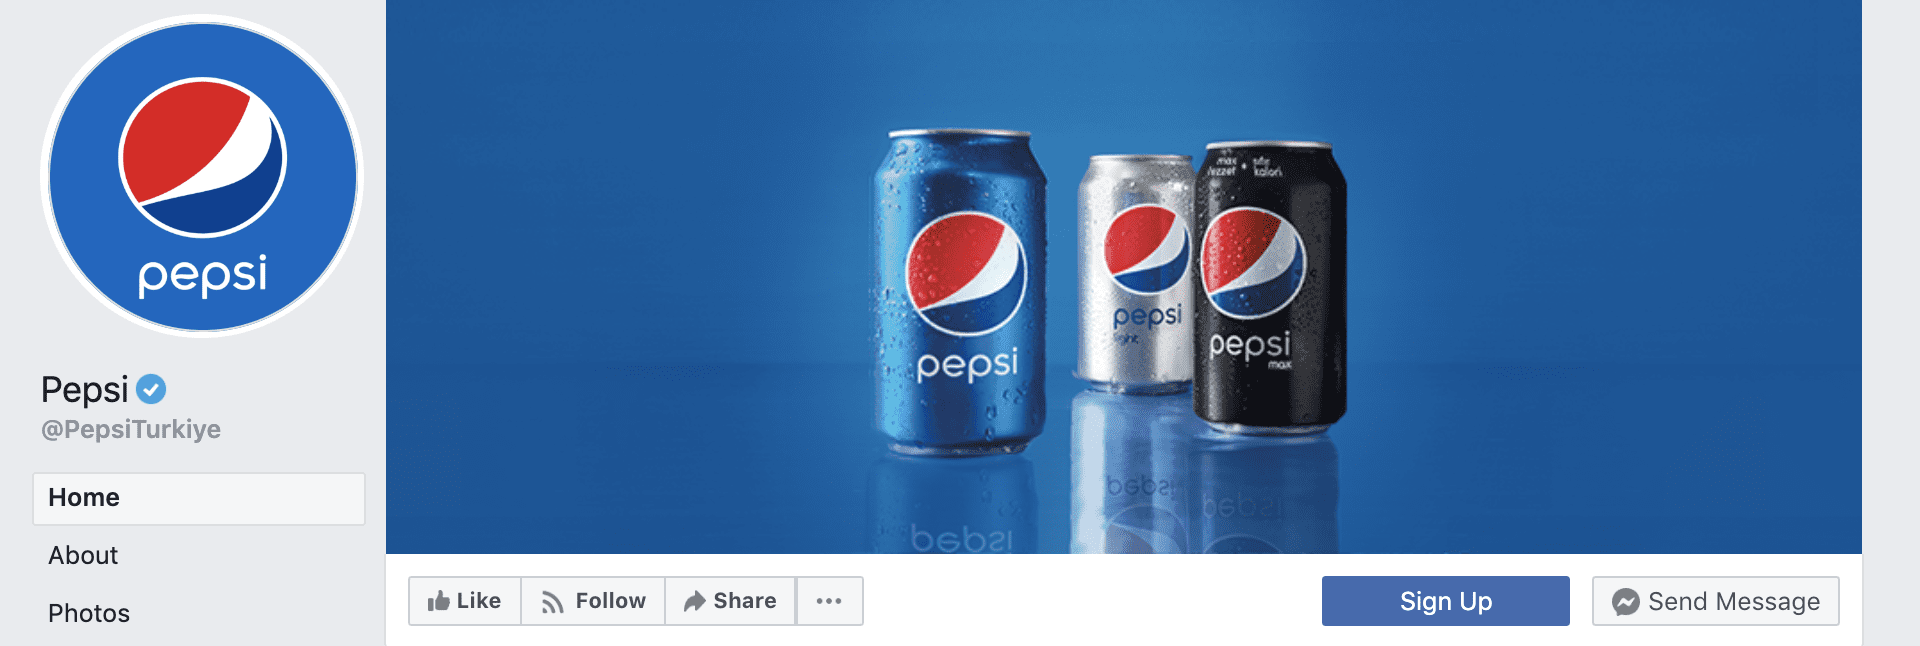 Pepsi Facebook Cover Photo